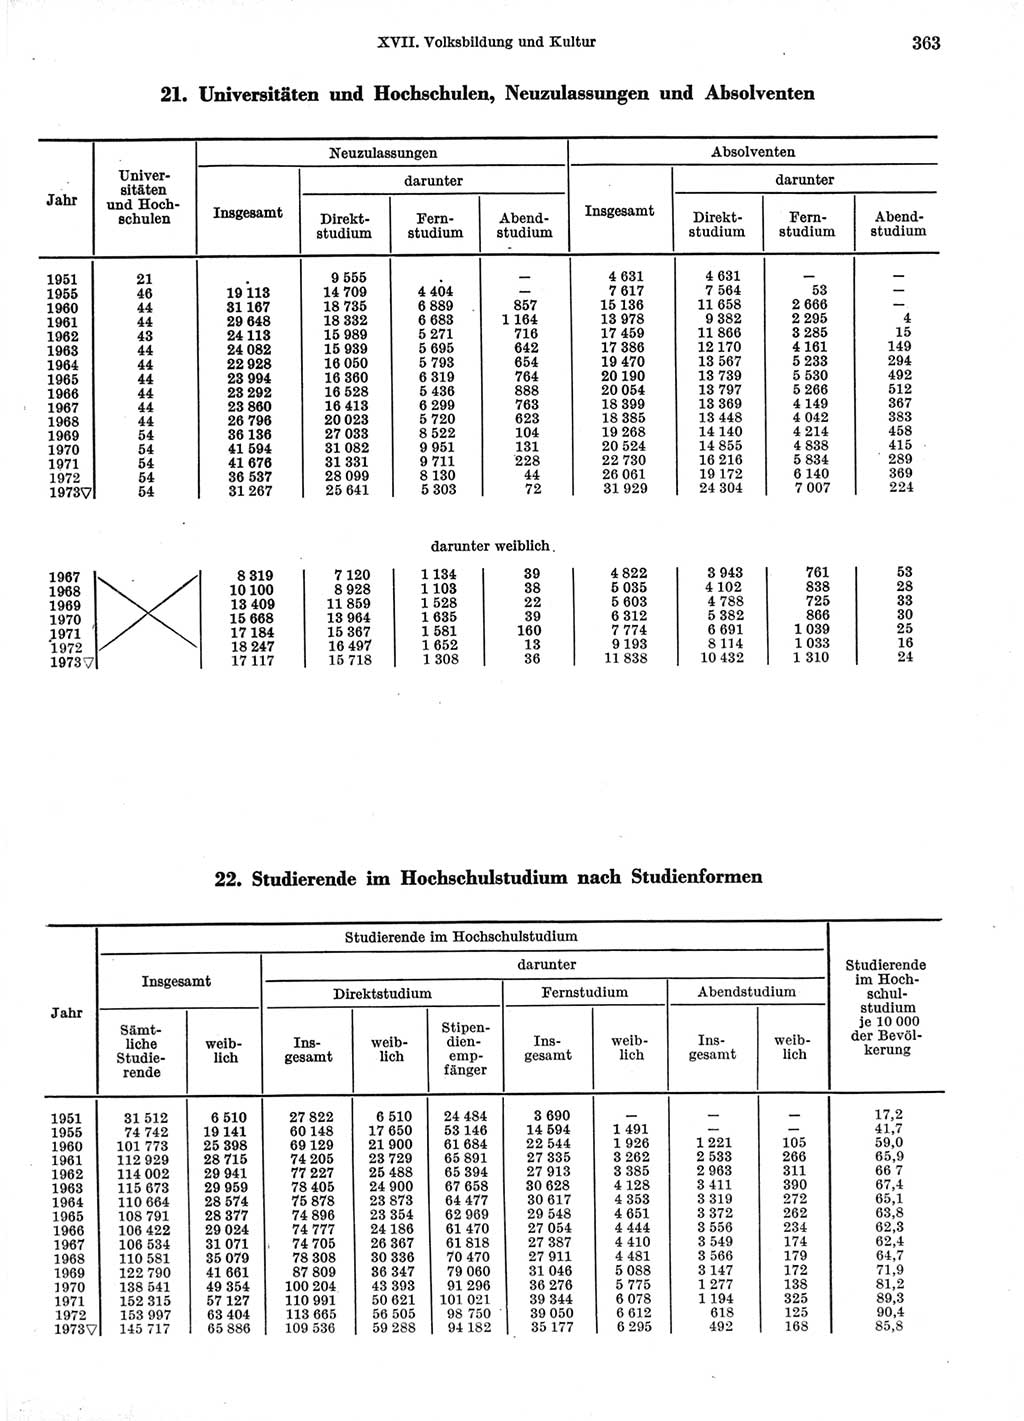 Statistisches Jahrbuch der Deutschen Demokratischen Republik (DDR) 1974, Seite 363 (Stat. Jb. DDR 1974, S. 363)